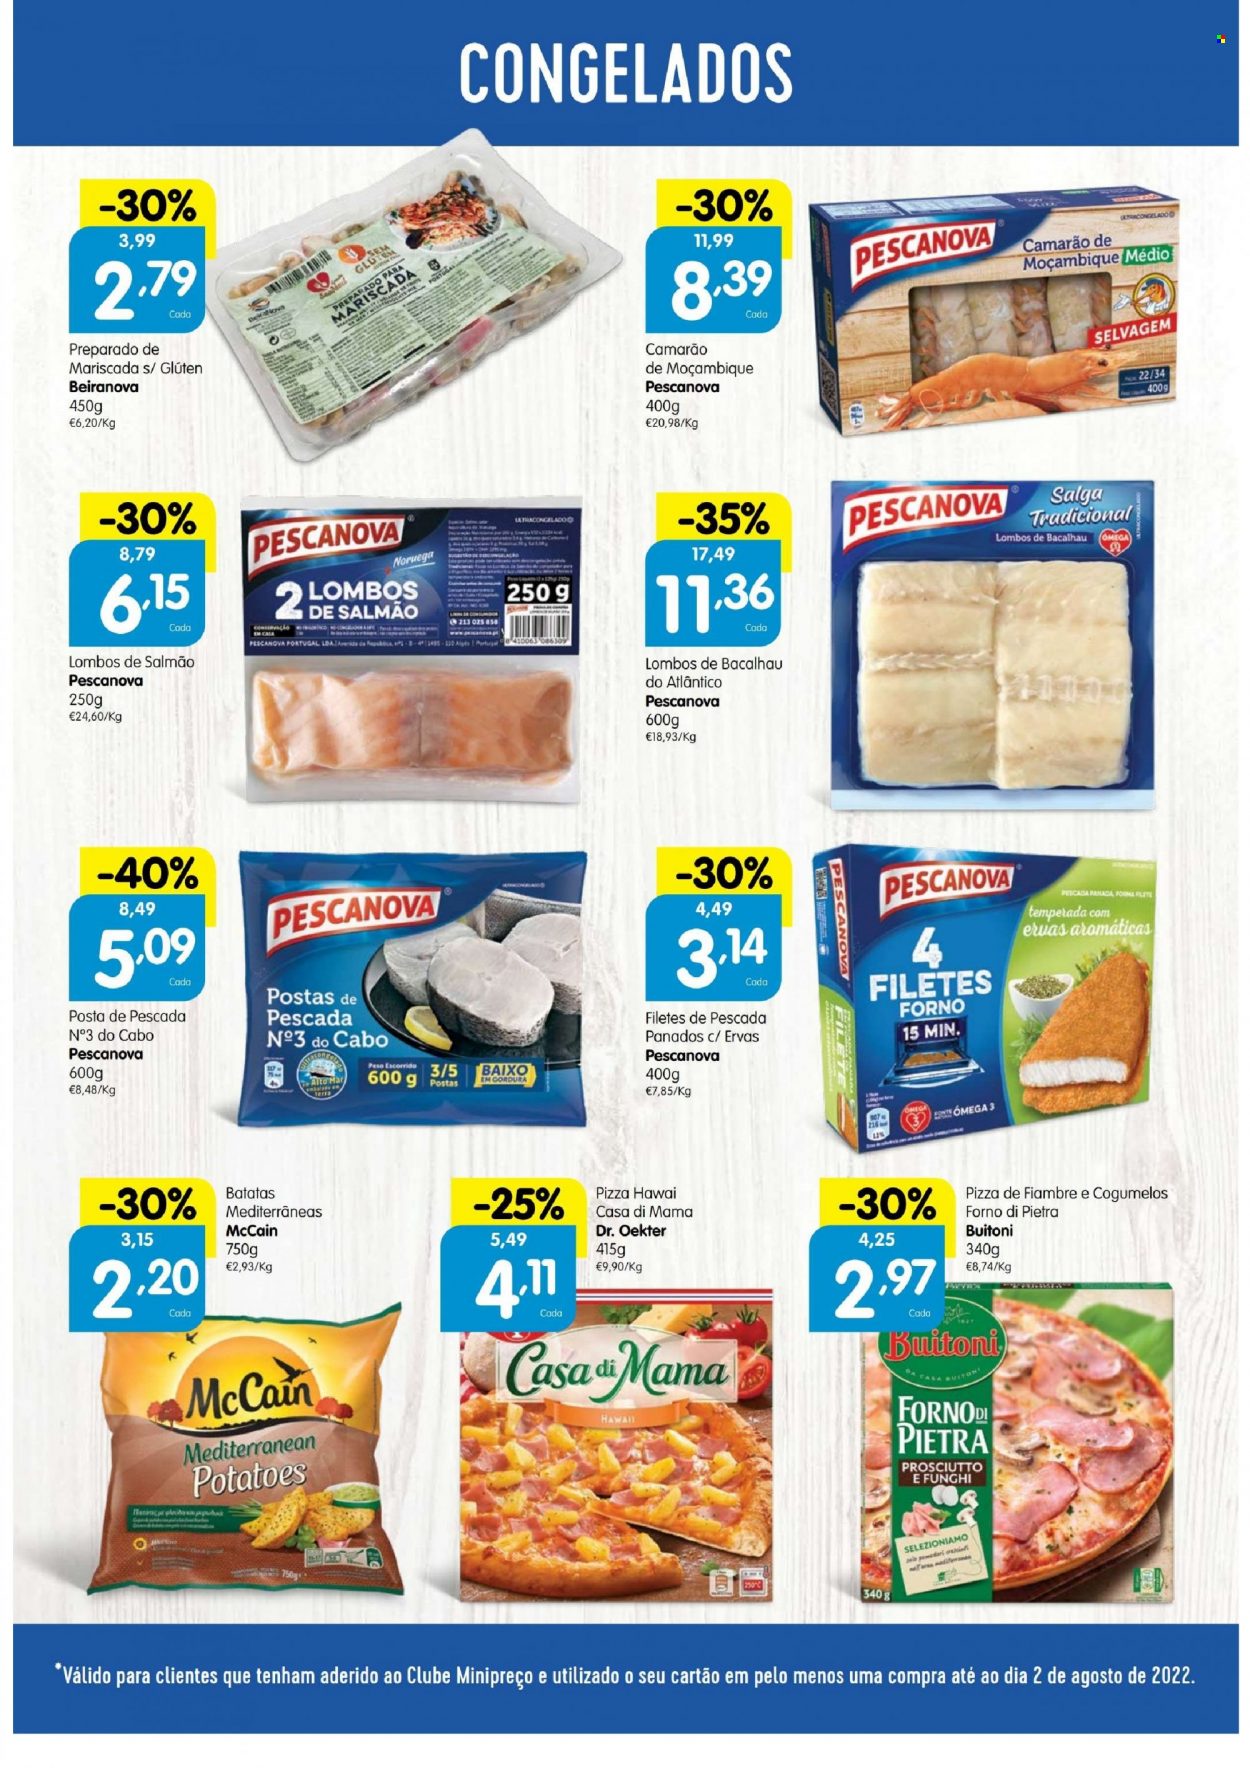 thumbnail - Folheto Minipreço - 4.8.2022 - 10.8.2022 - Produtos em promoção - salmão, camarão, bacalhau, filetes de peixe, pizza, prosciutto, McCain, ervas aromáticas. Página 2.